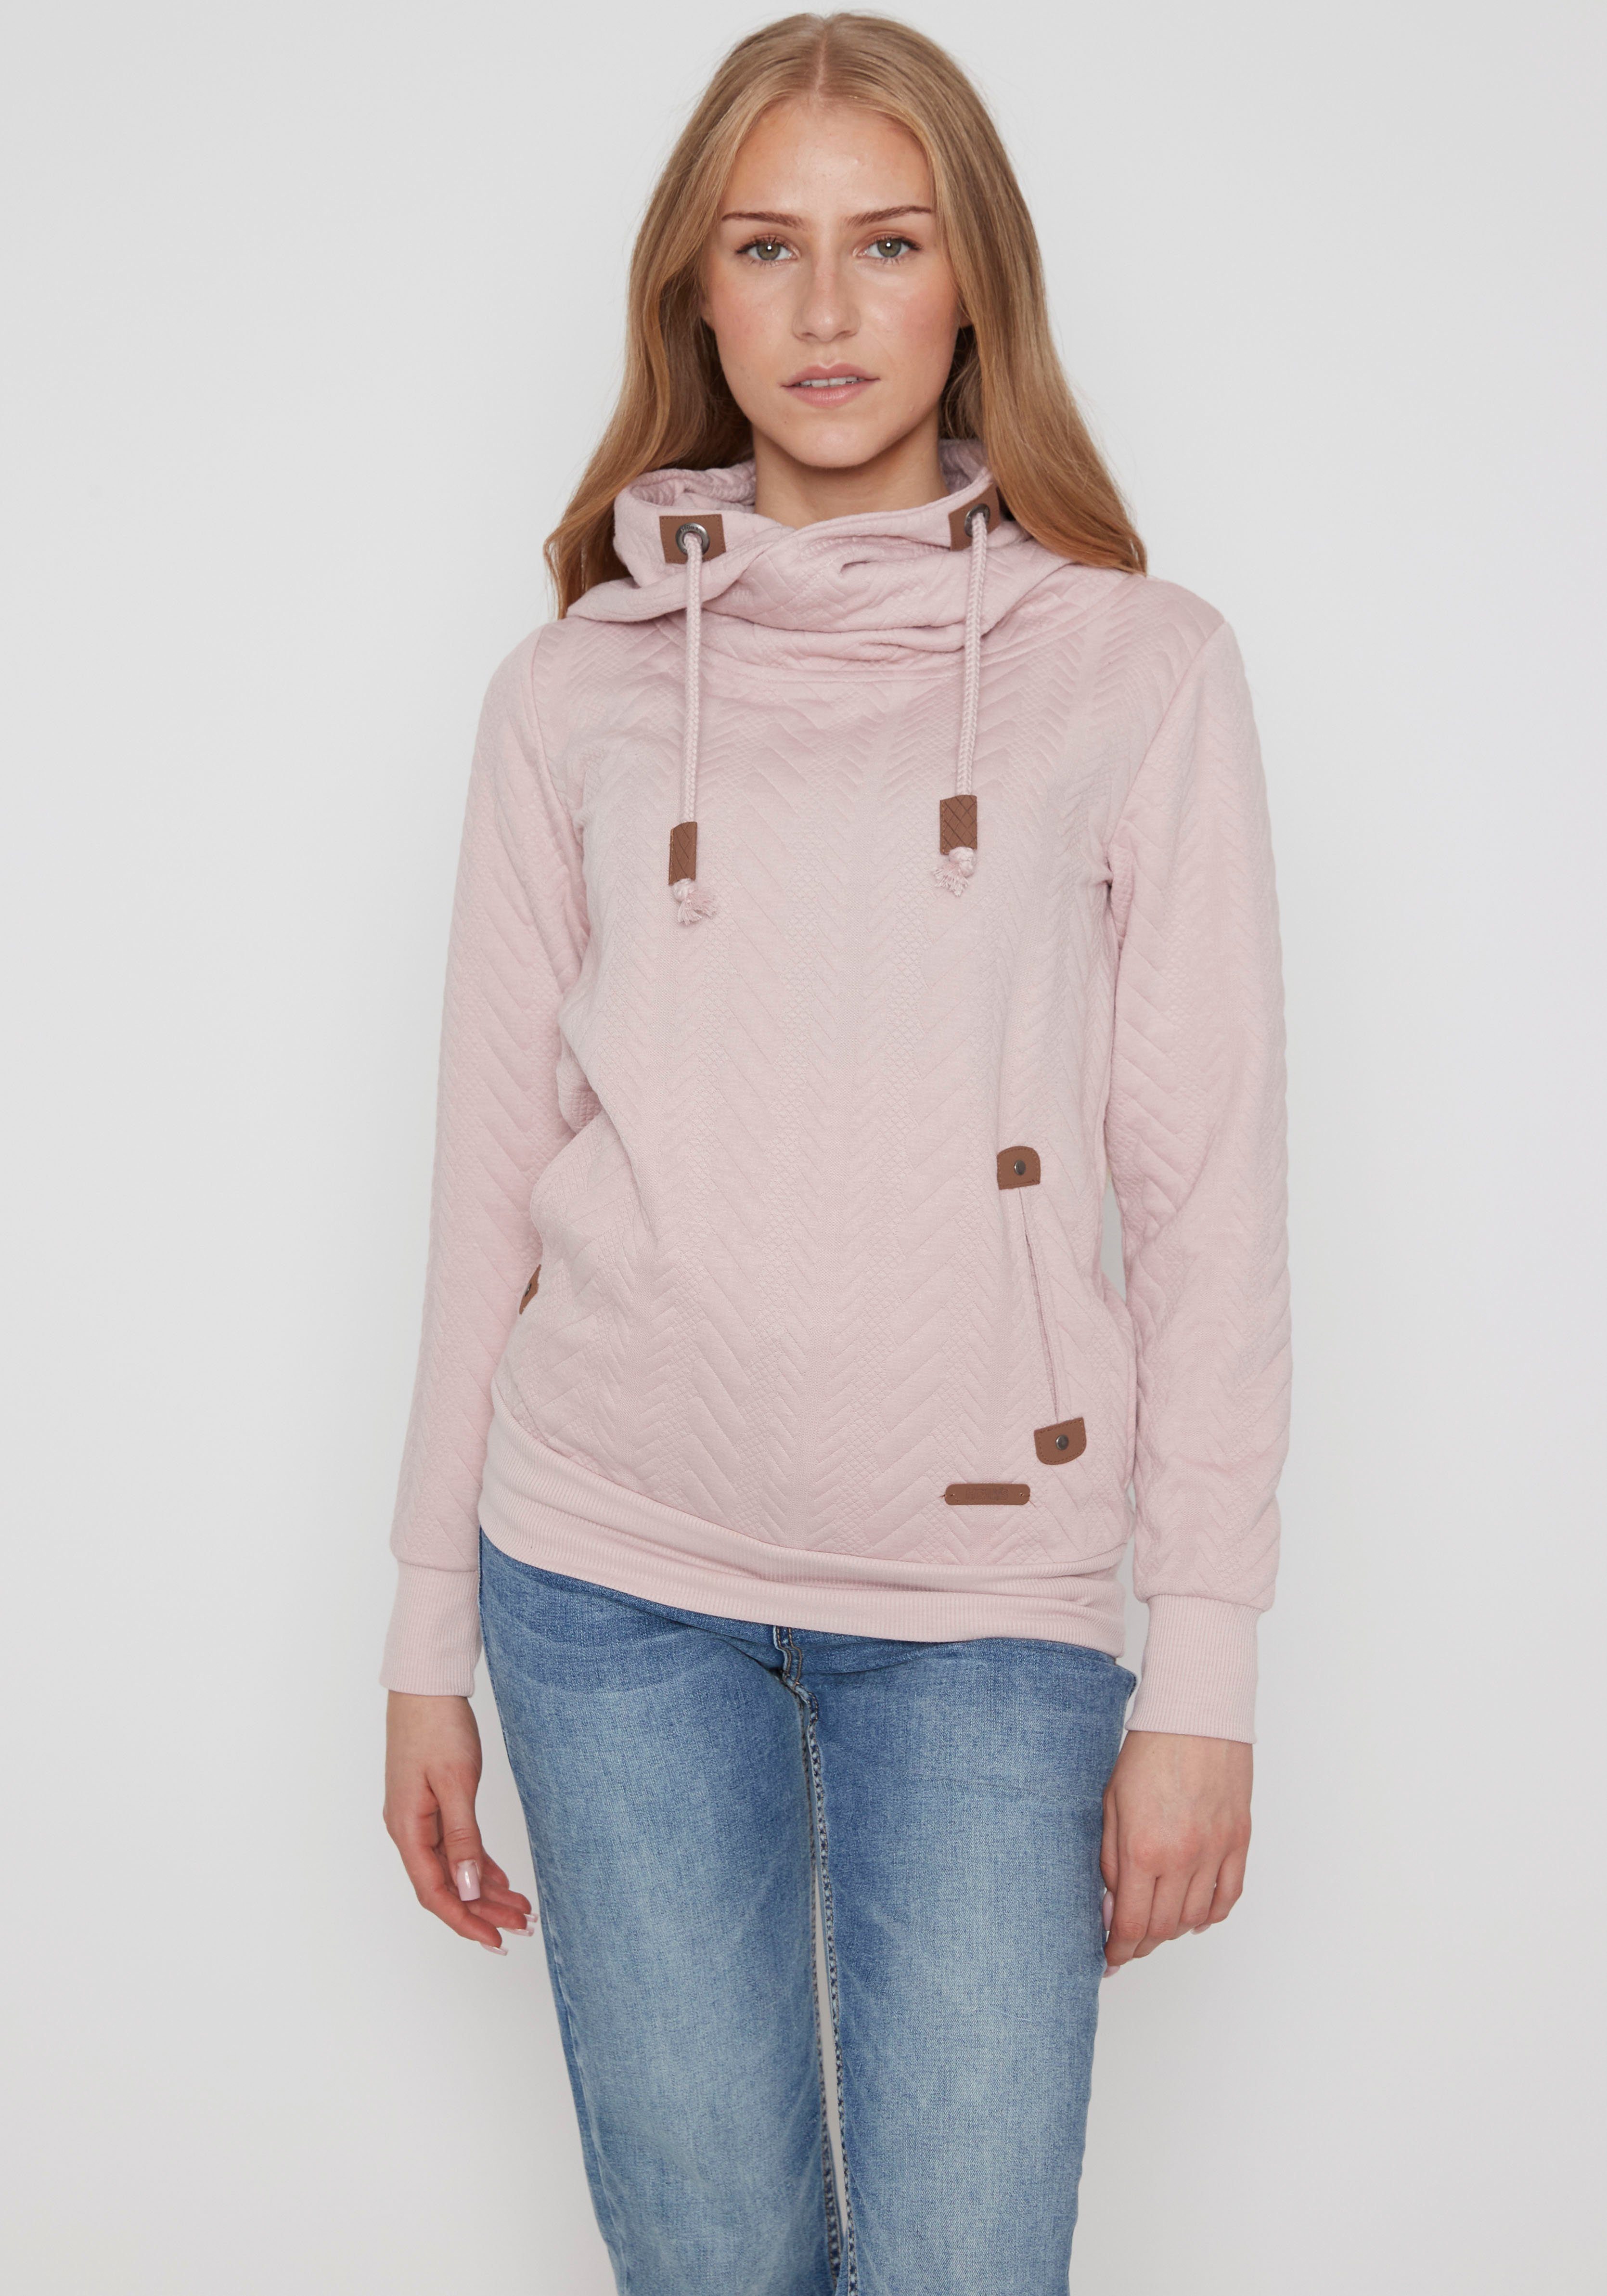 Rosa Only Sweatshirts für Damen online kaufen | OTTO